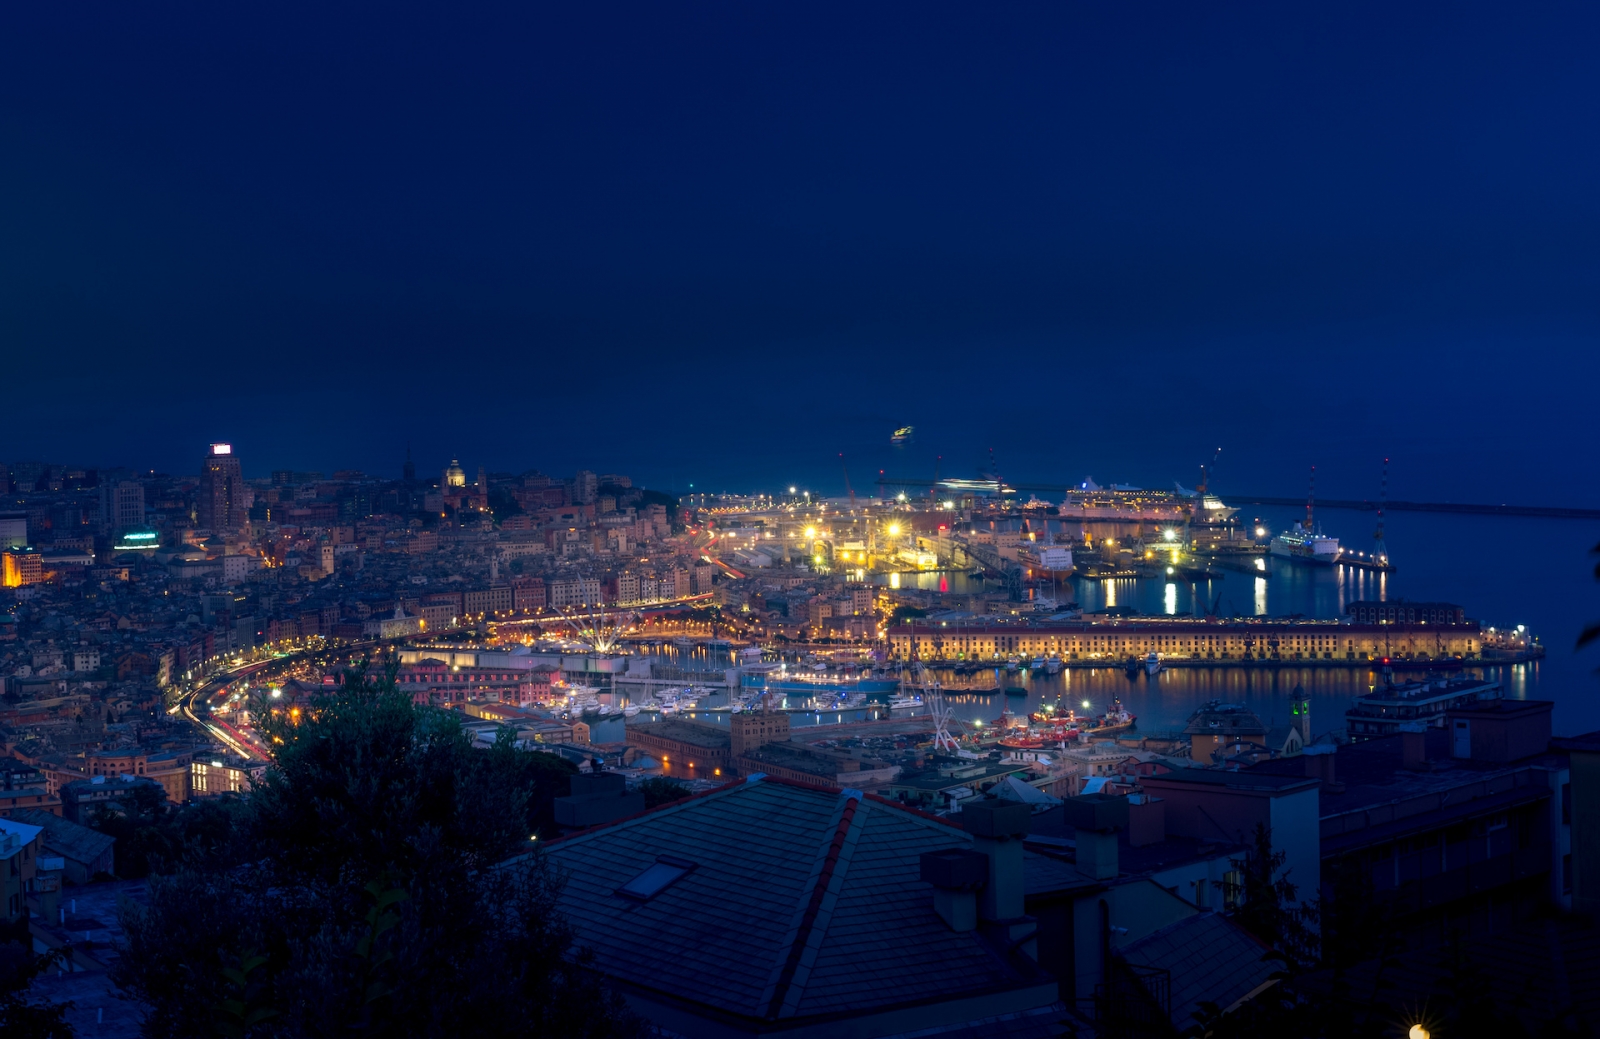 Ночной городской пейзаж Генуи со старым портом, круизными лайнерами, морскими и портовыми кранами на заднем плане